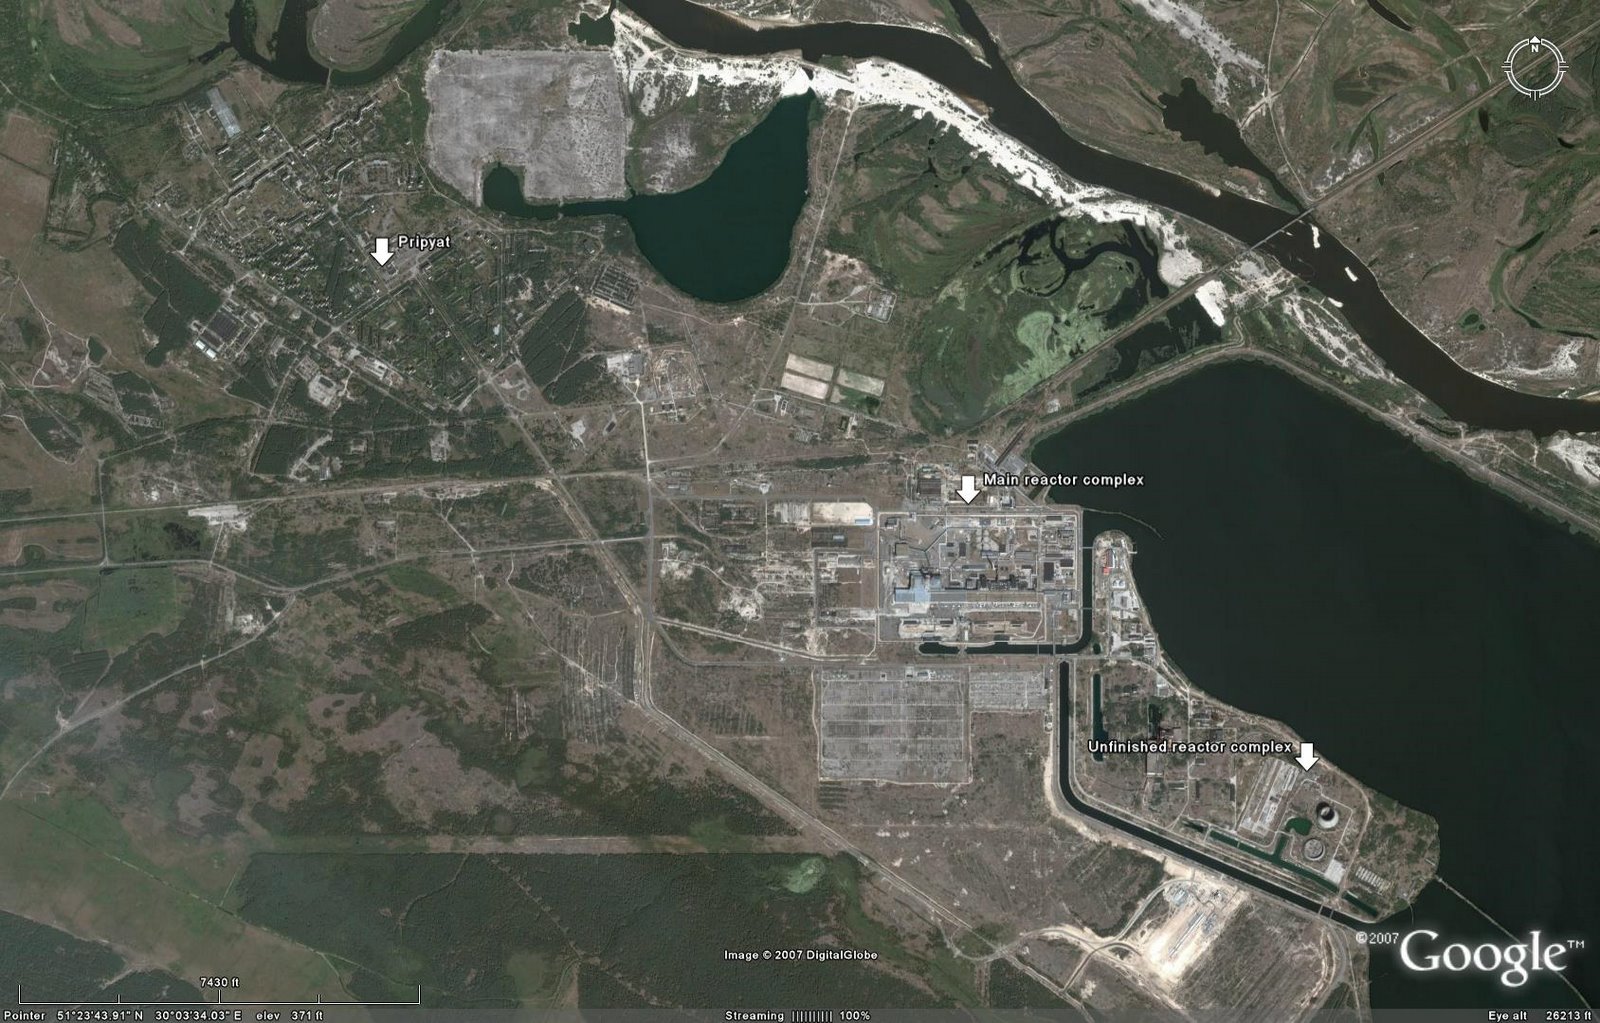 [chernobyloverview.jpg]